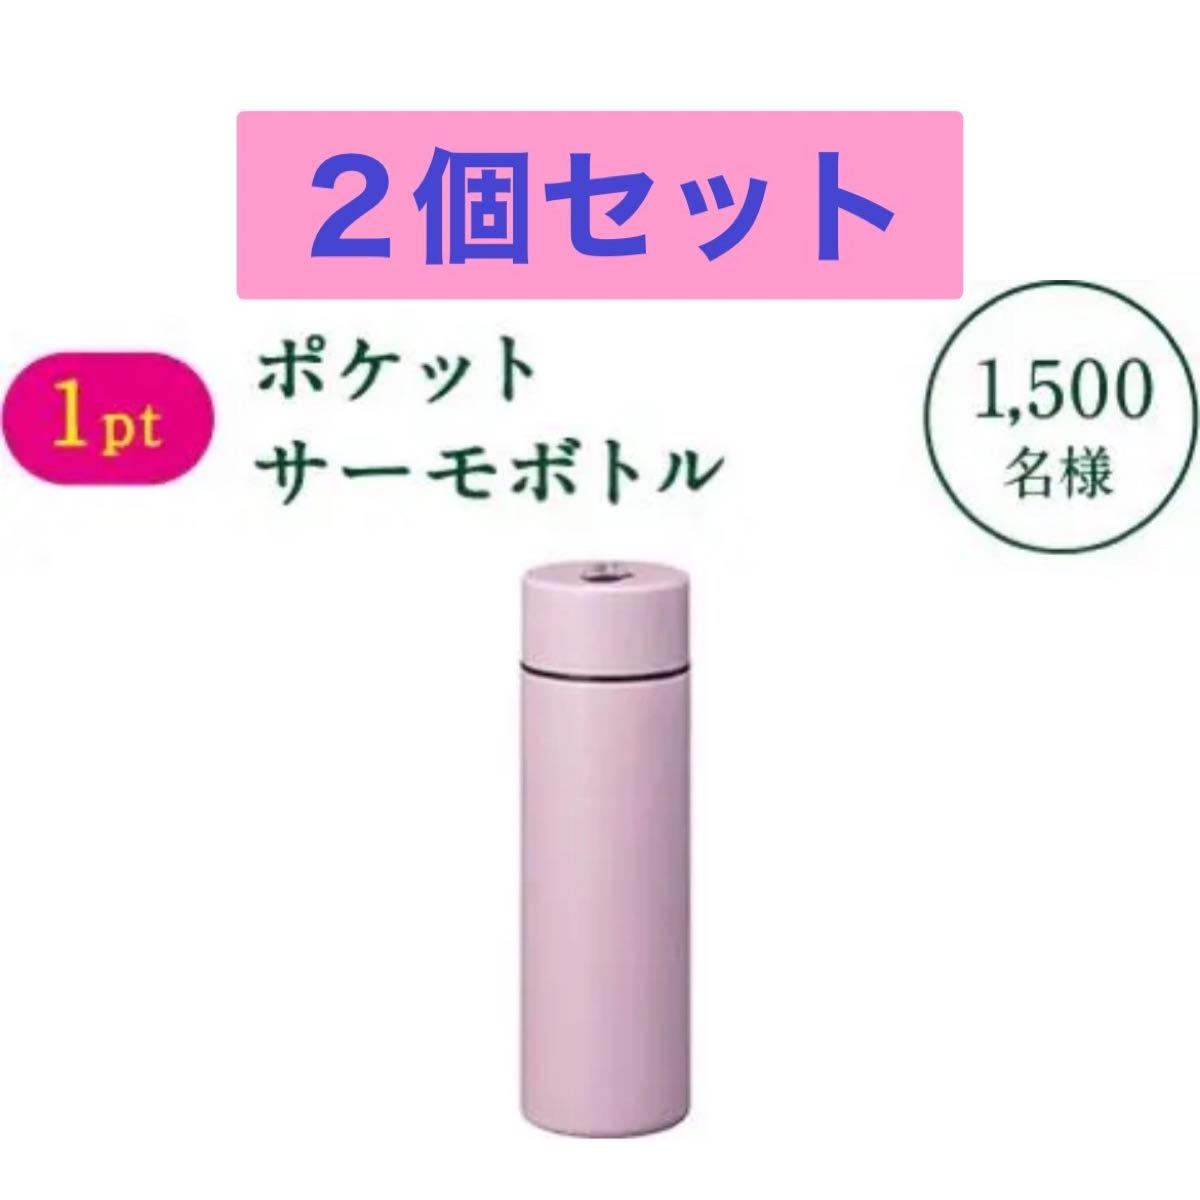 綾鷹 ポケット サーモボトル 2個セット 水筒 ボトル ミニボトル あやたか ピンク ステンレスマグ ステンレスボトル